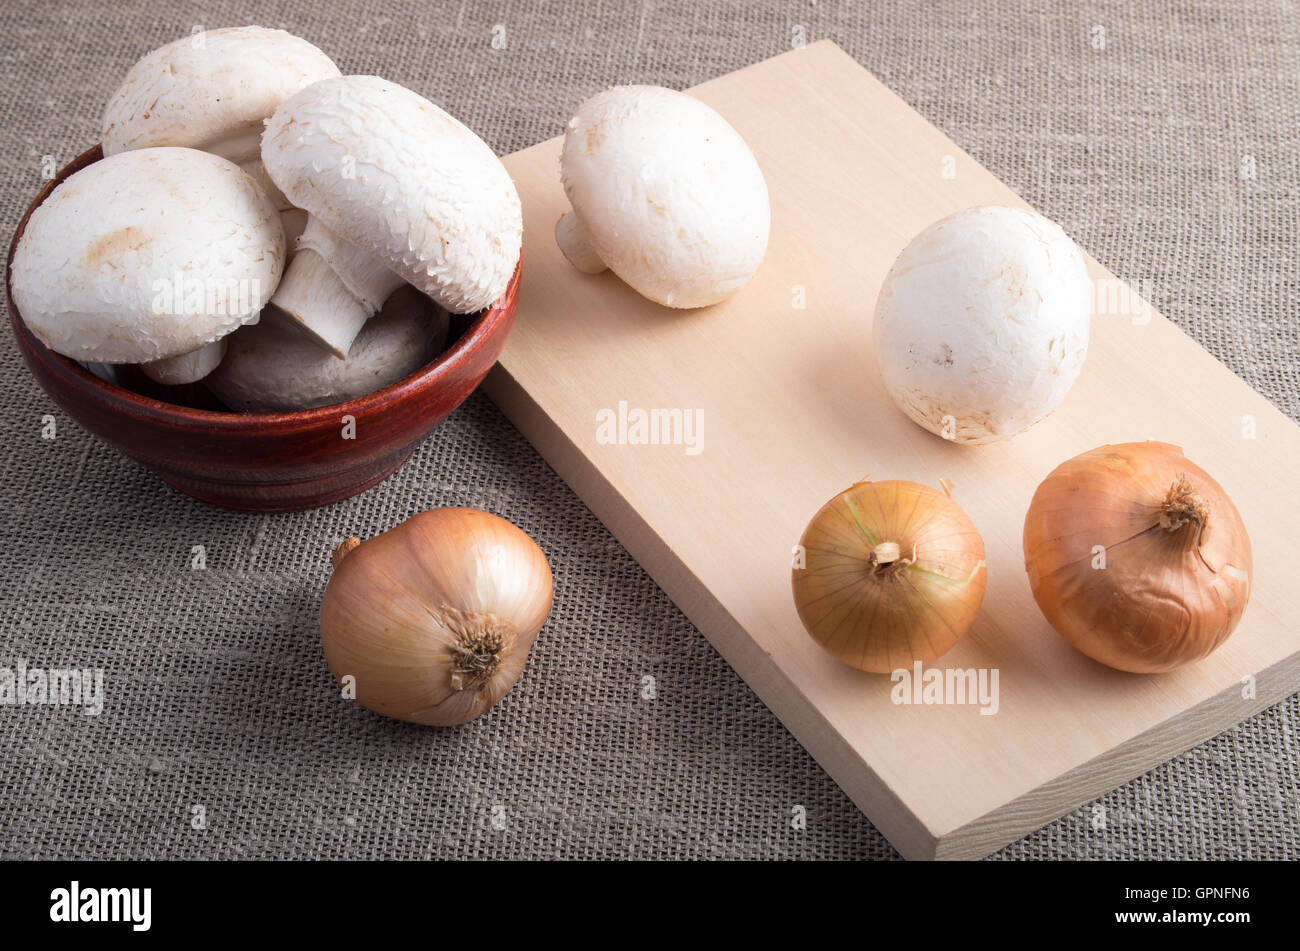 Matières champignon champignons et oignons sur la table, couverte de jute Banque D'Images